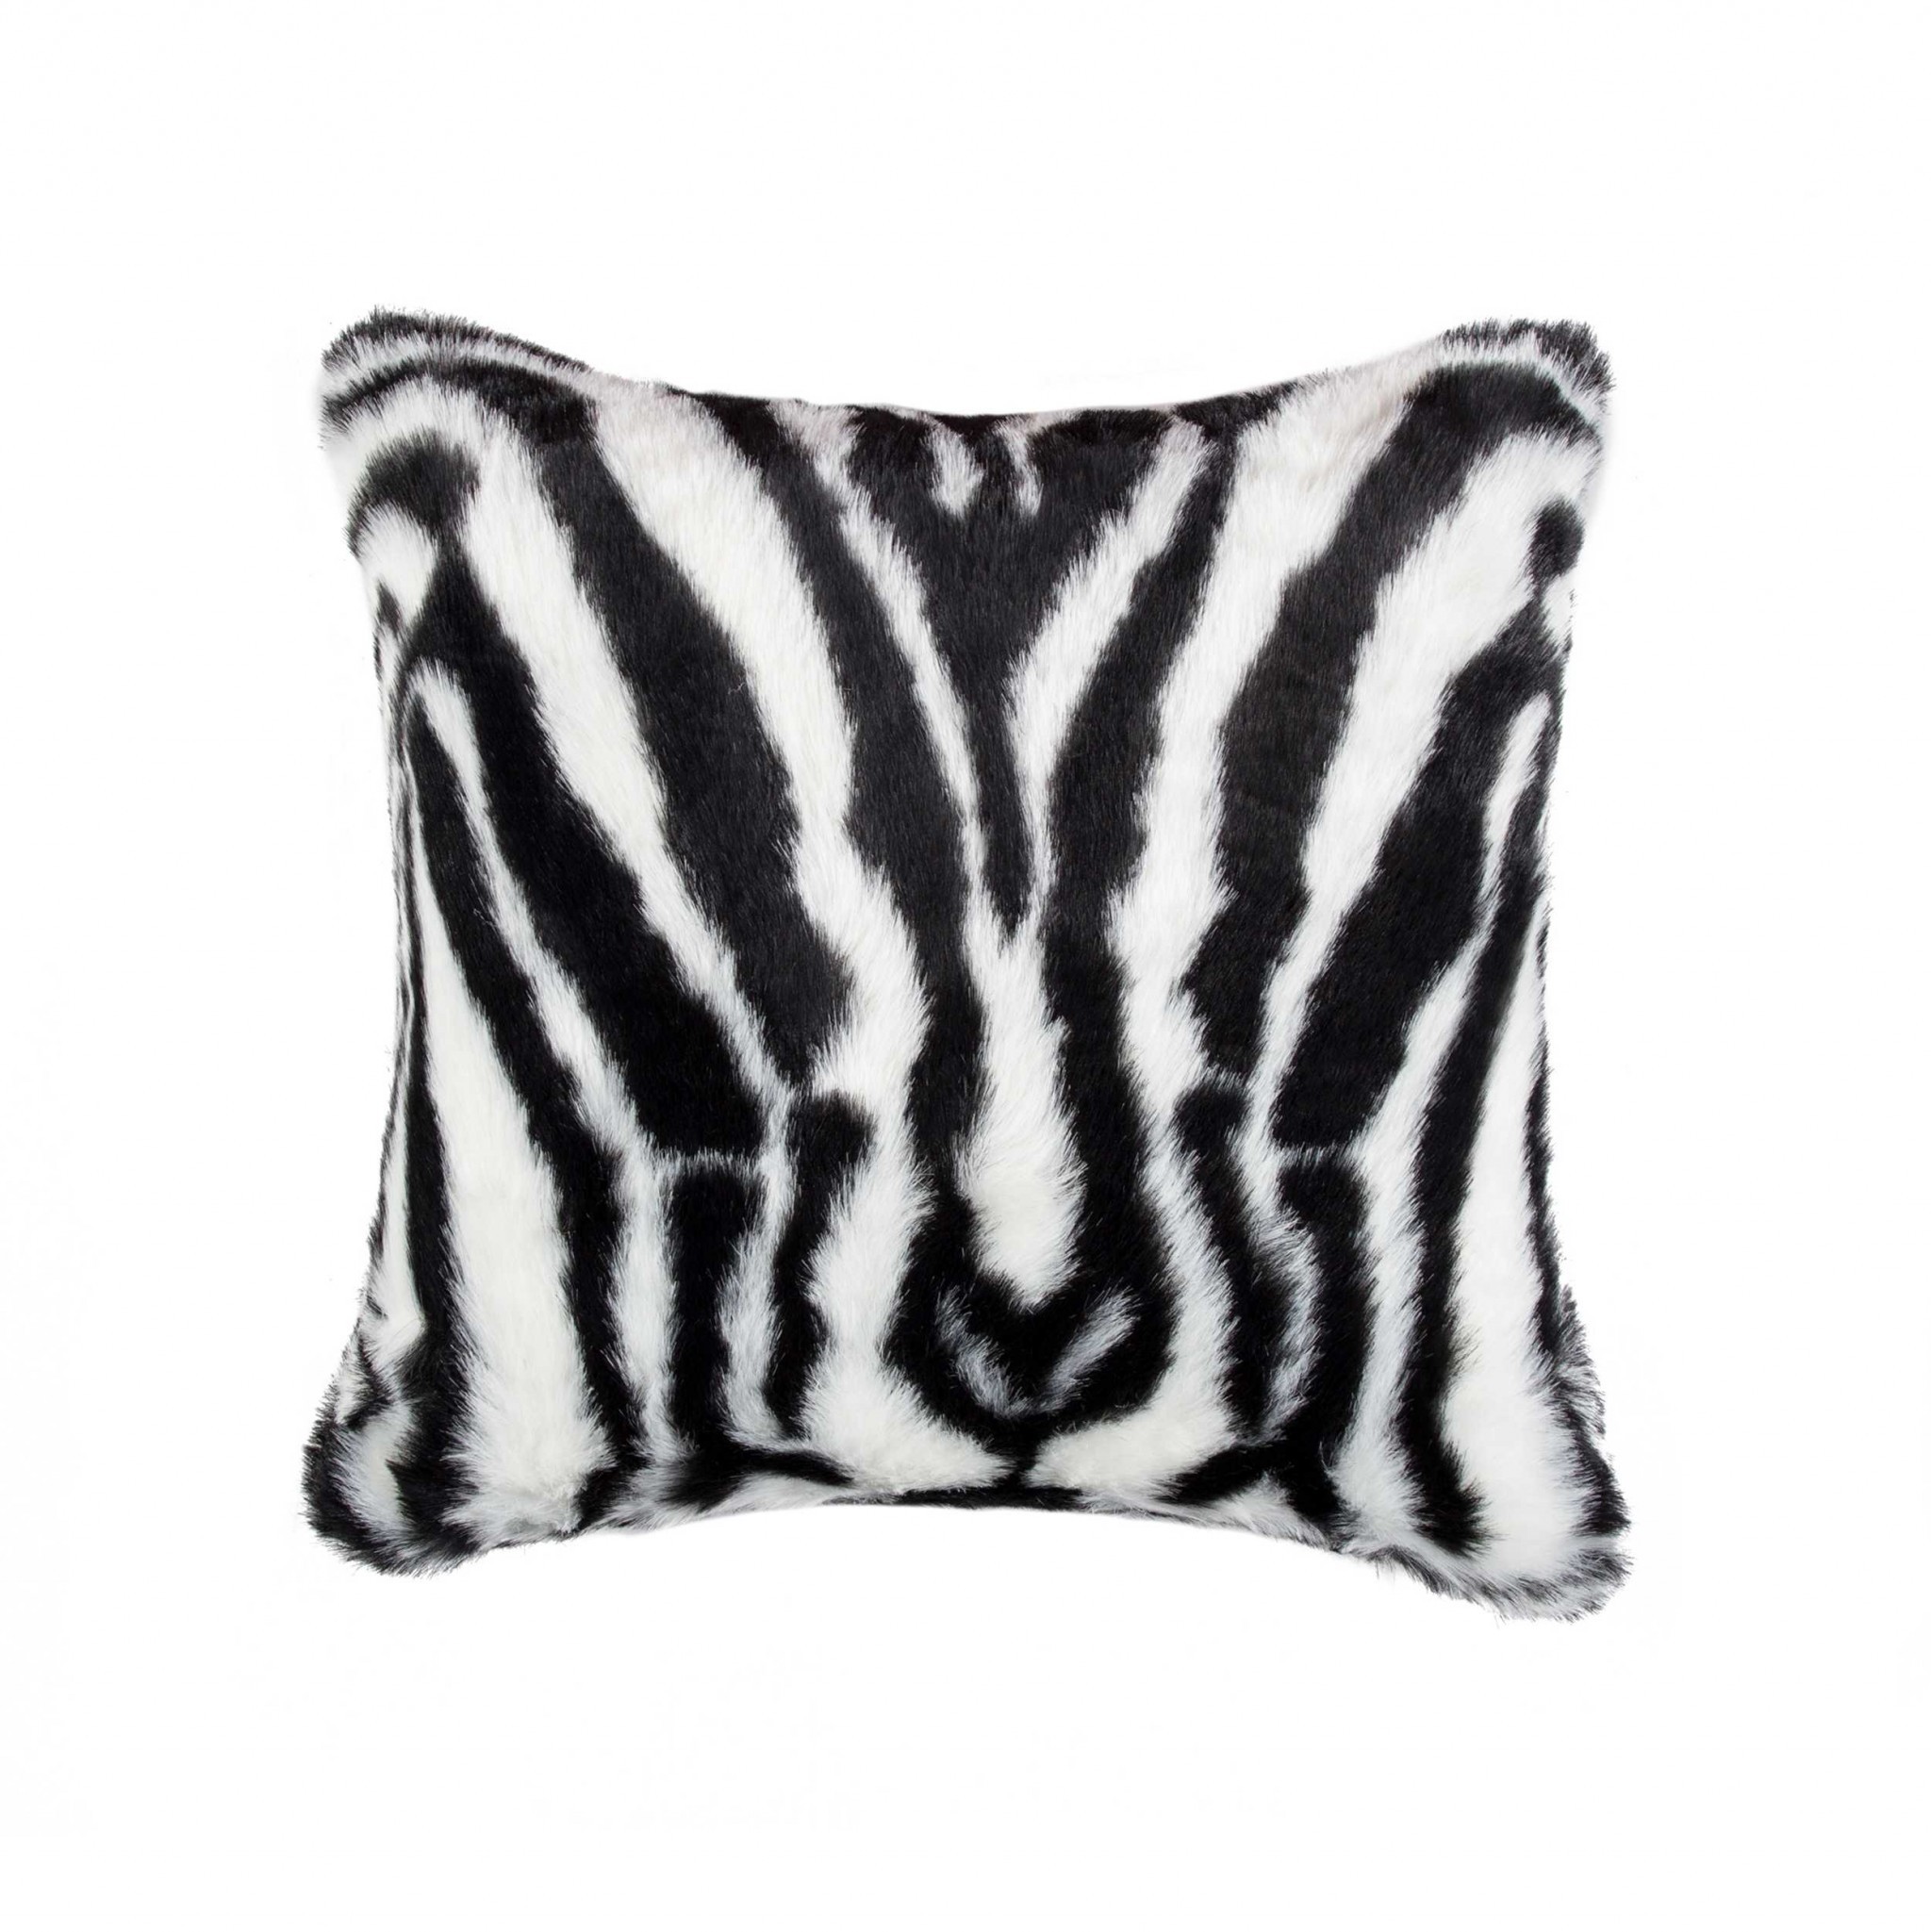 18" x 18" x 5" Zebra Black And White Faux Fur - Pillow